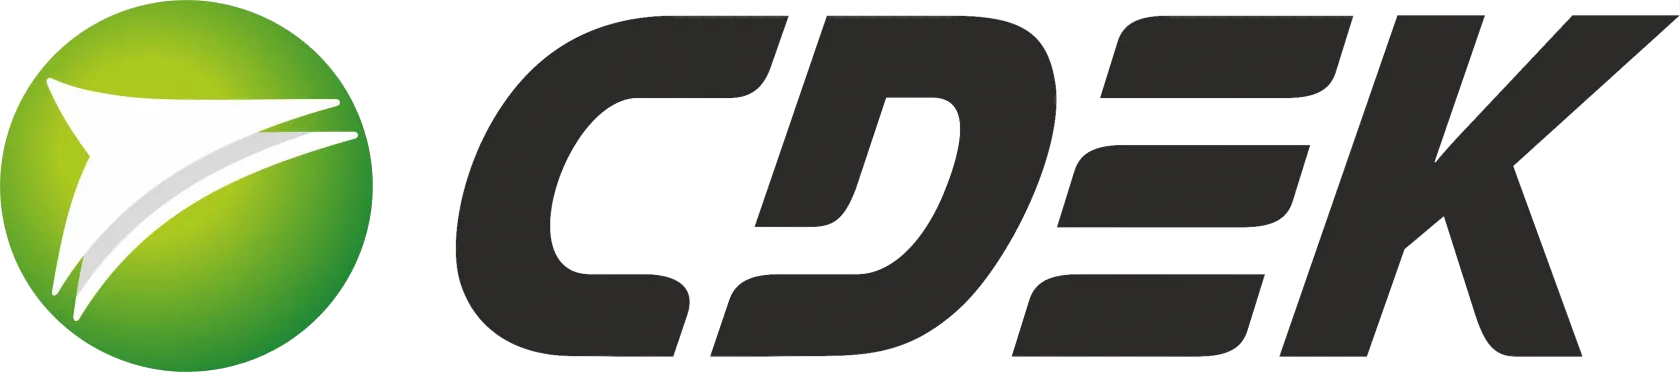 Логотип страны